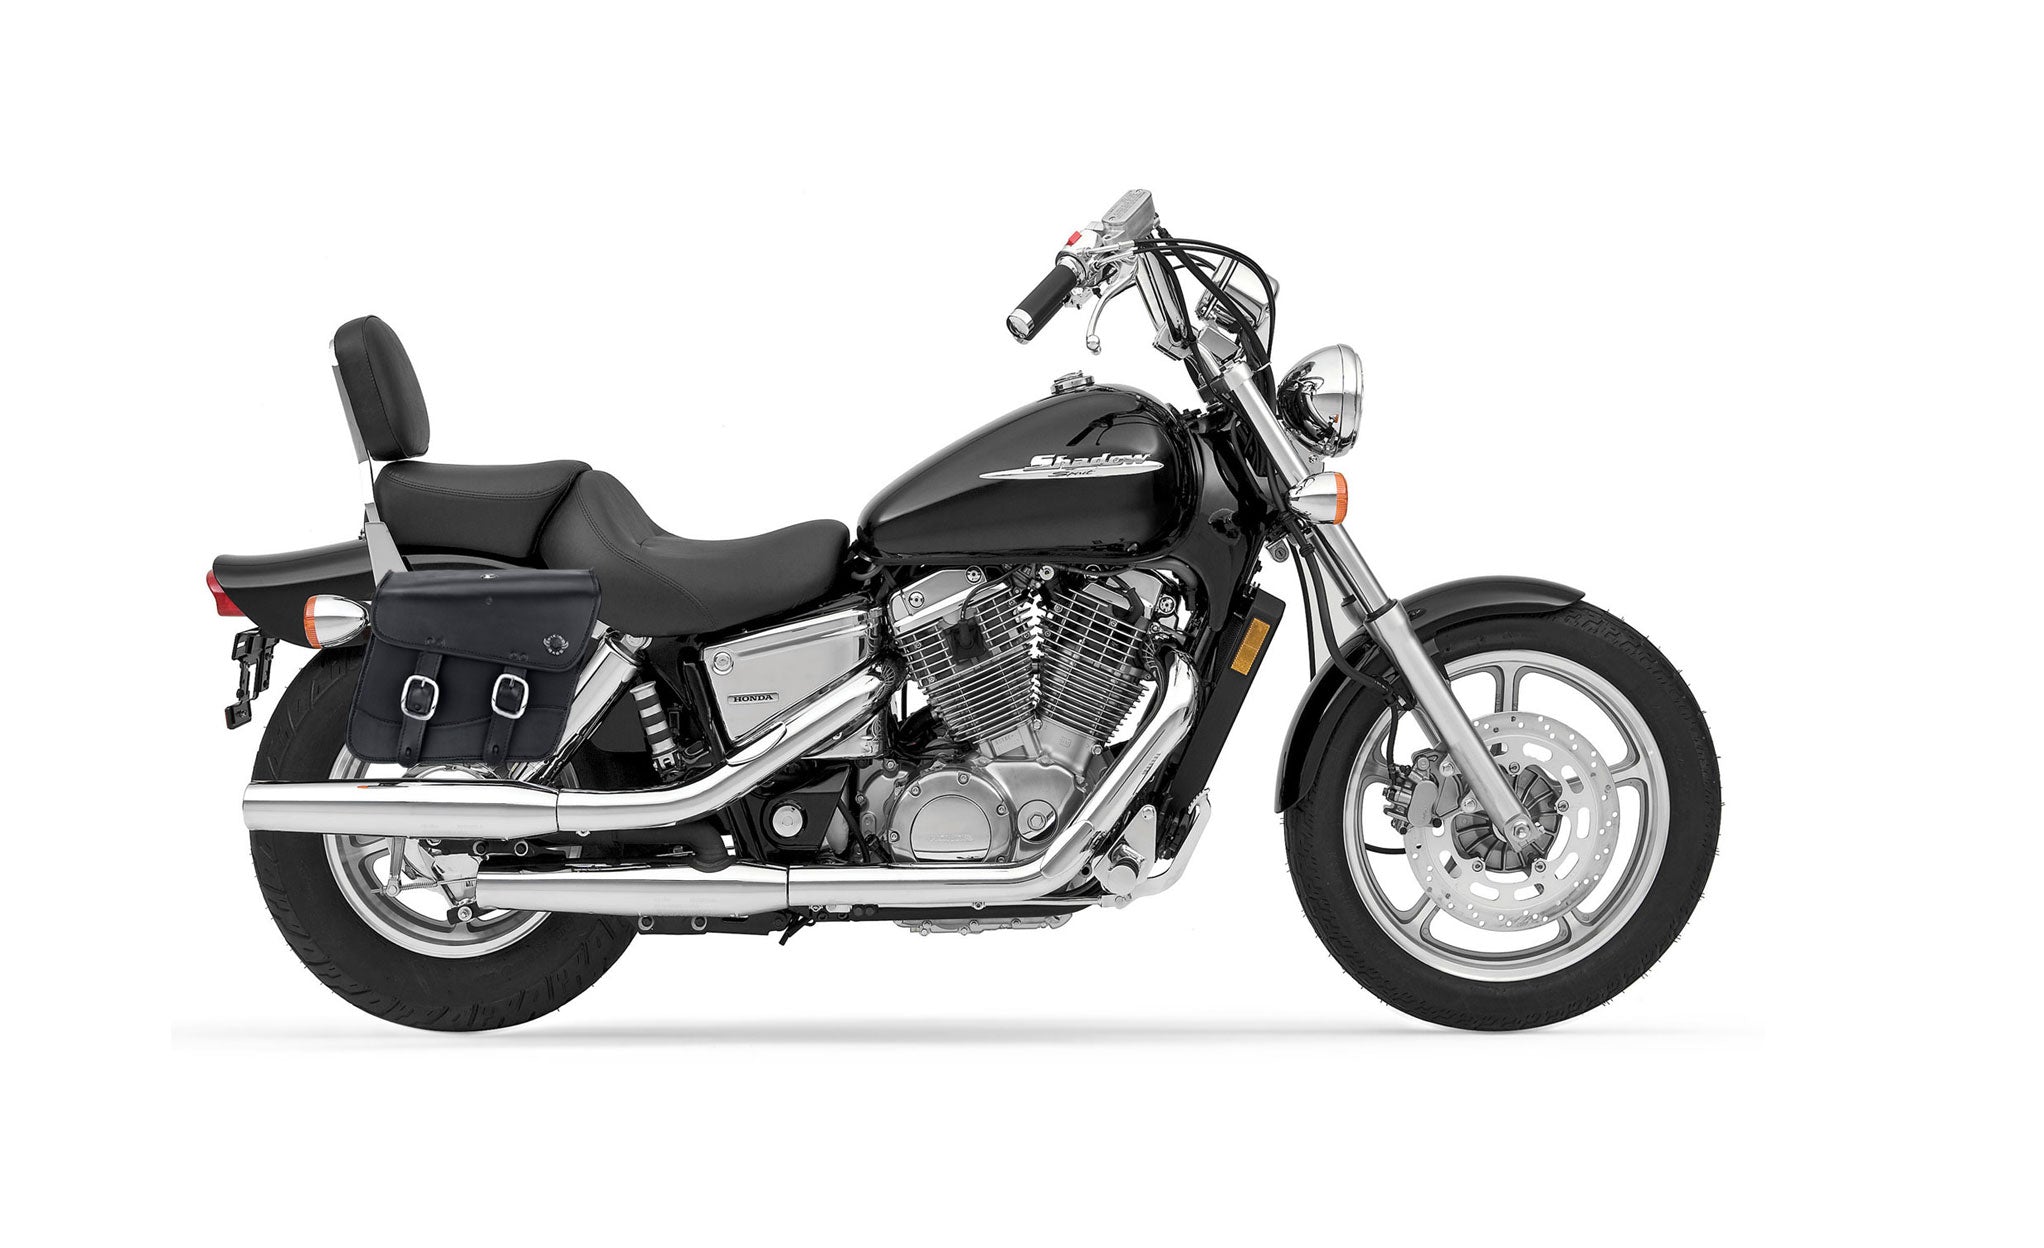 Viking Thor Medium Honda Shadow 1100 Spirit Leather Motorcycle Saddlebags on Bike Photo @expand